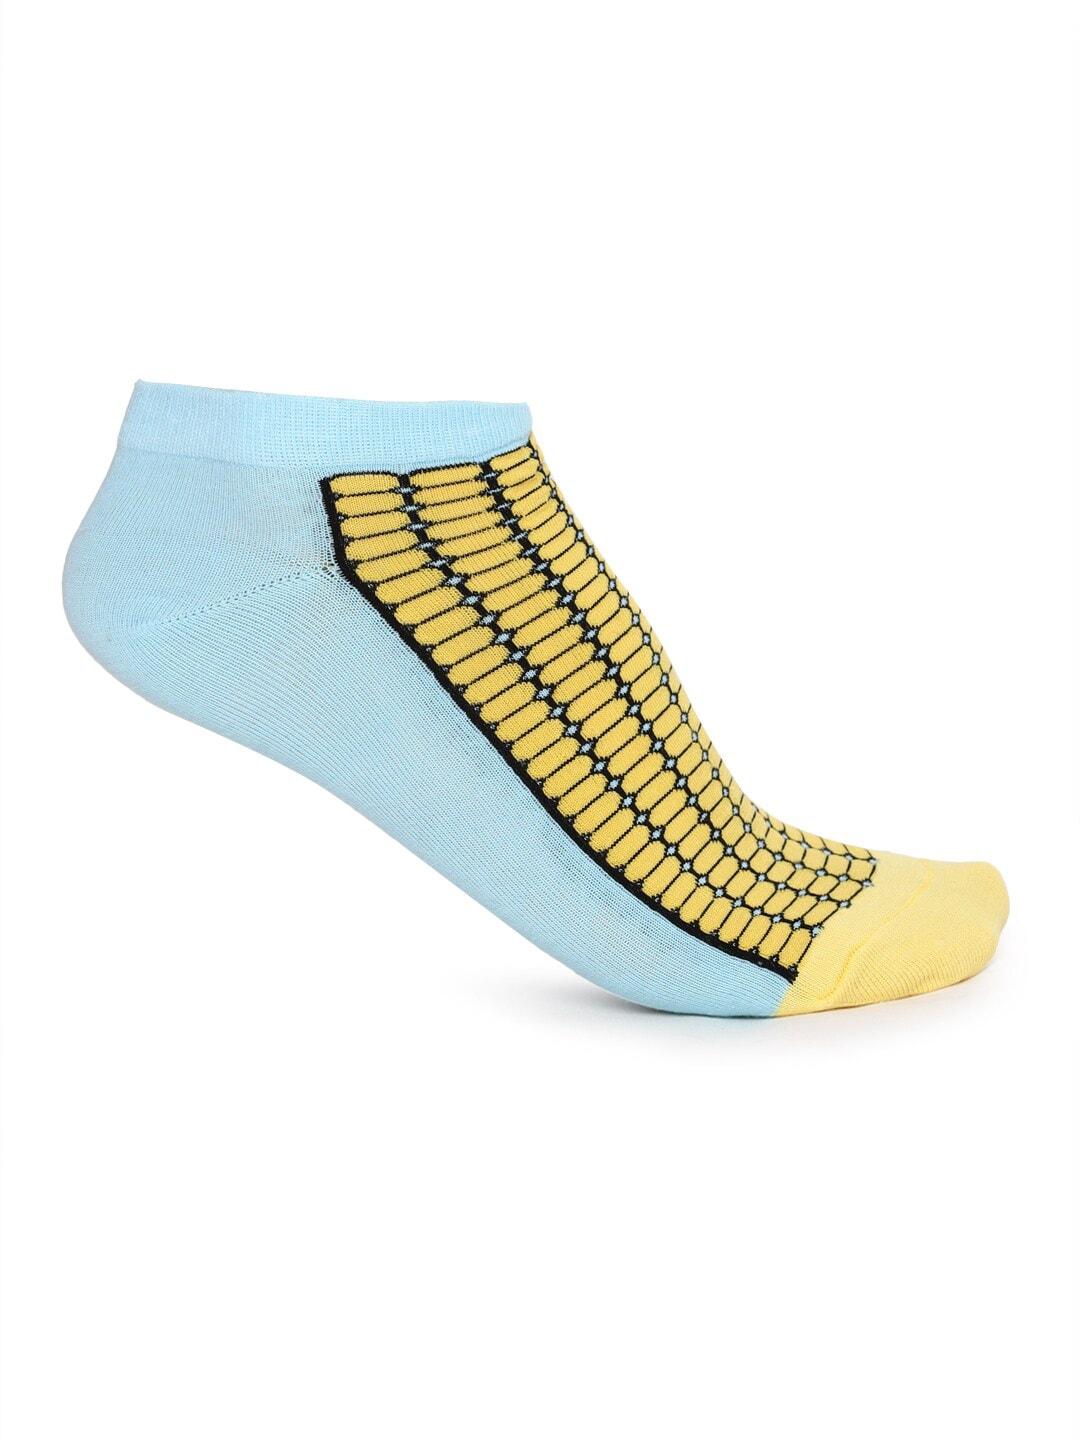 forever-21-men-blue-&-yellow-patterned-ankle-length-socks